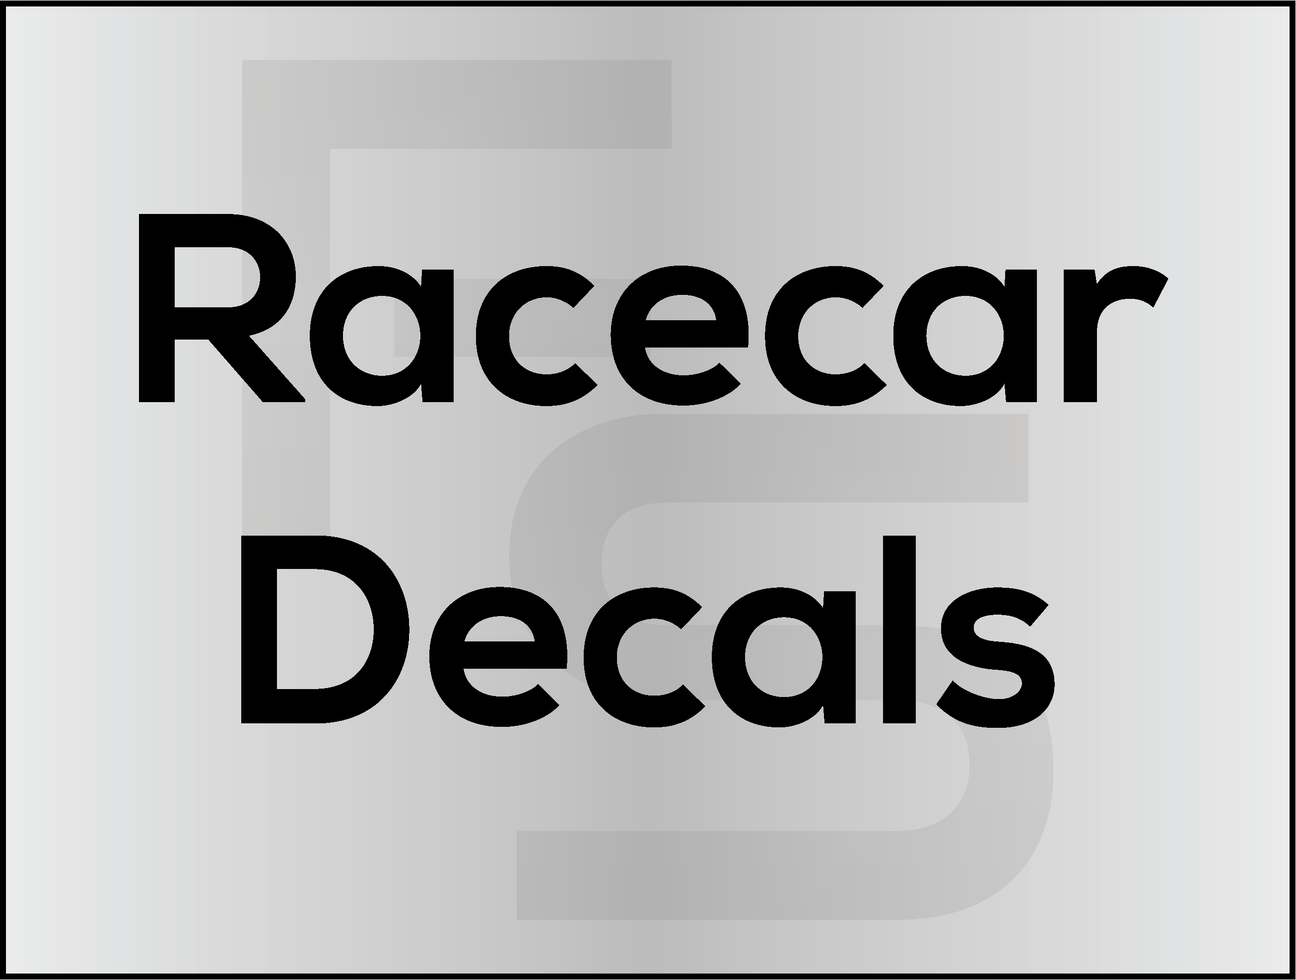 Racecar Decals